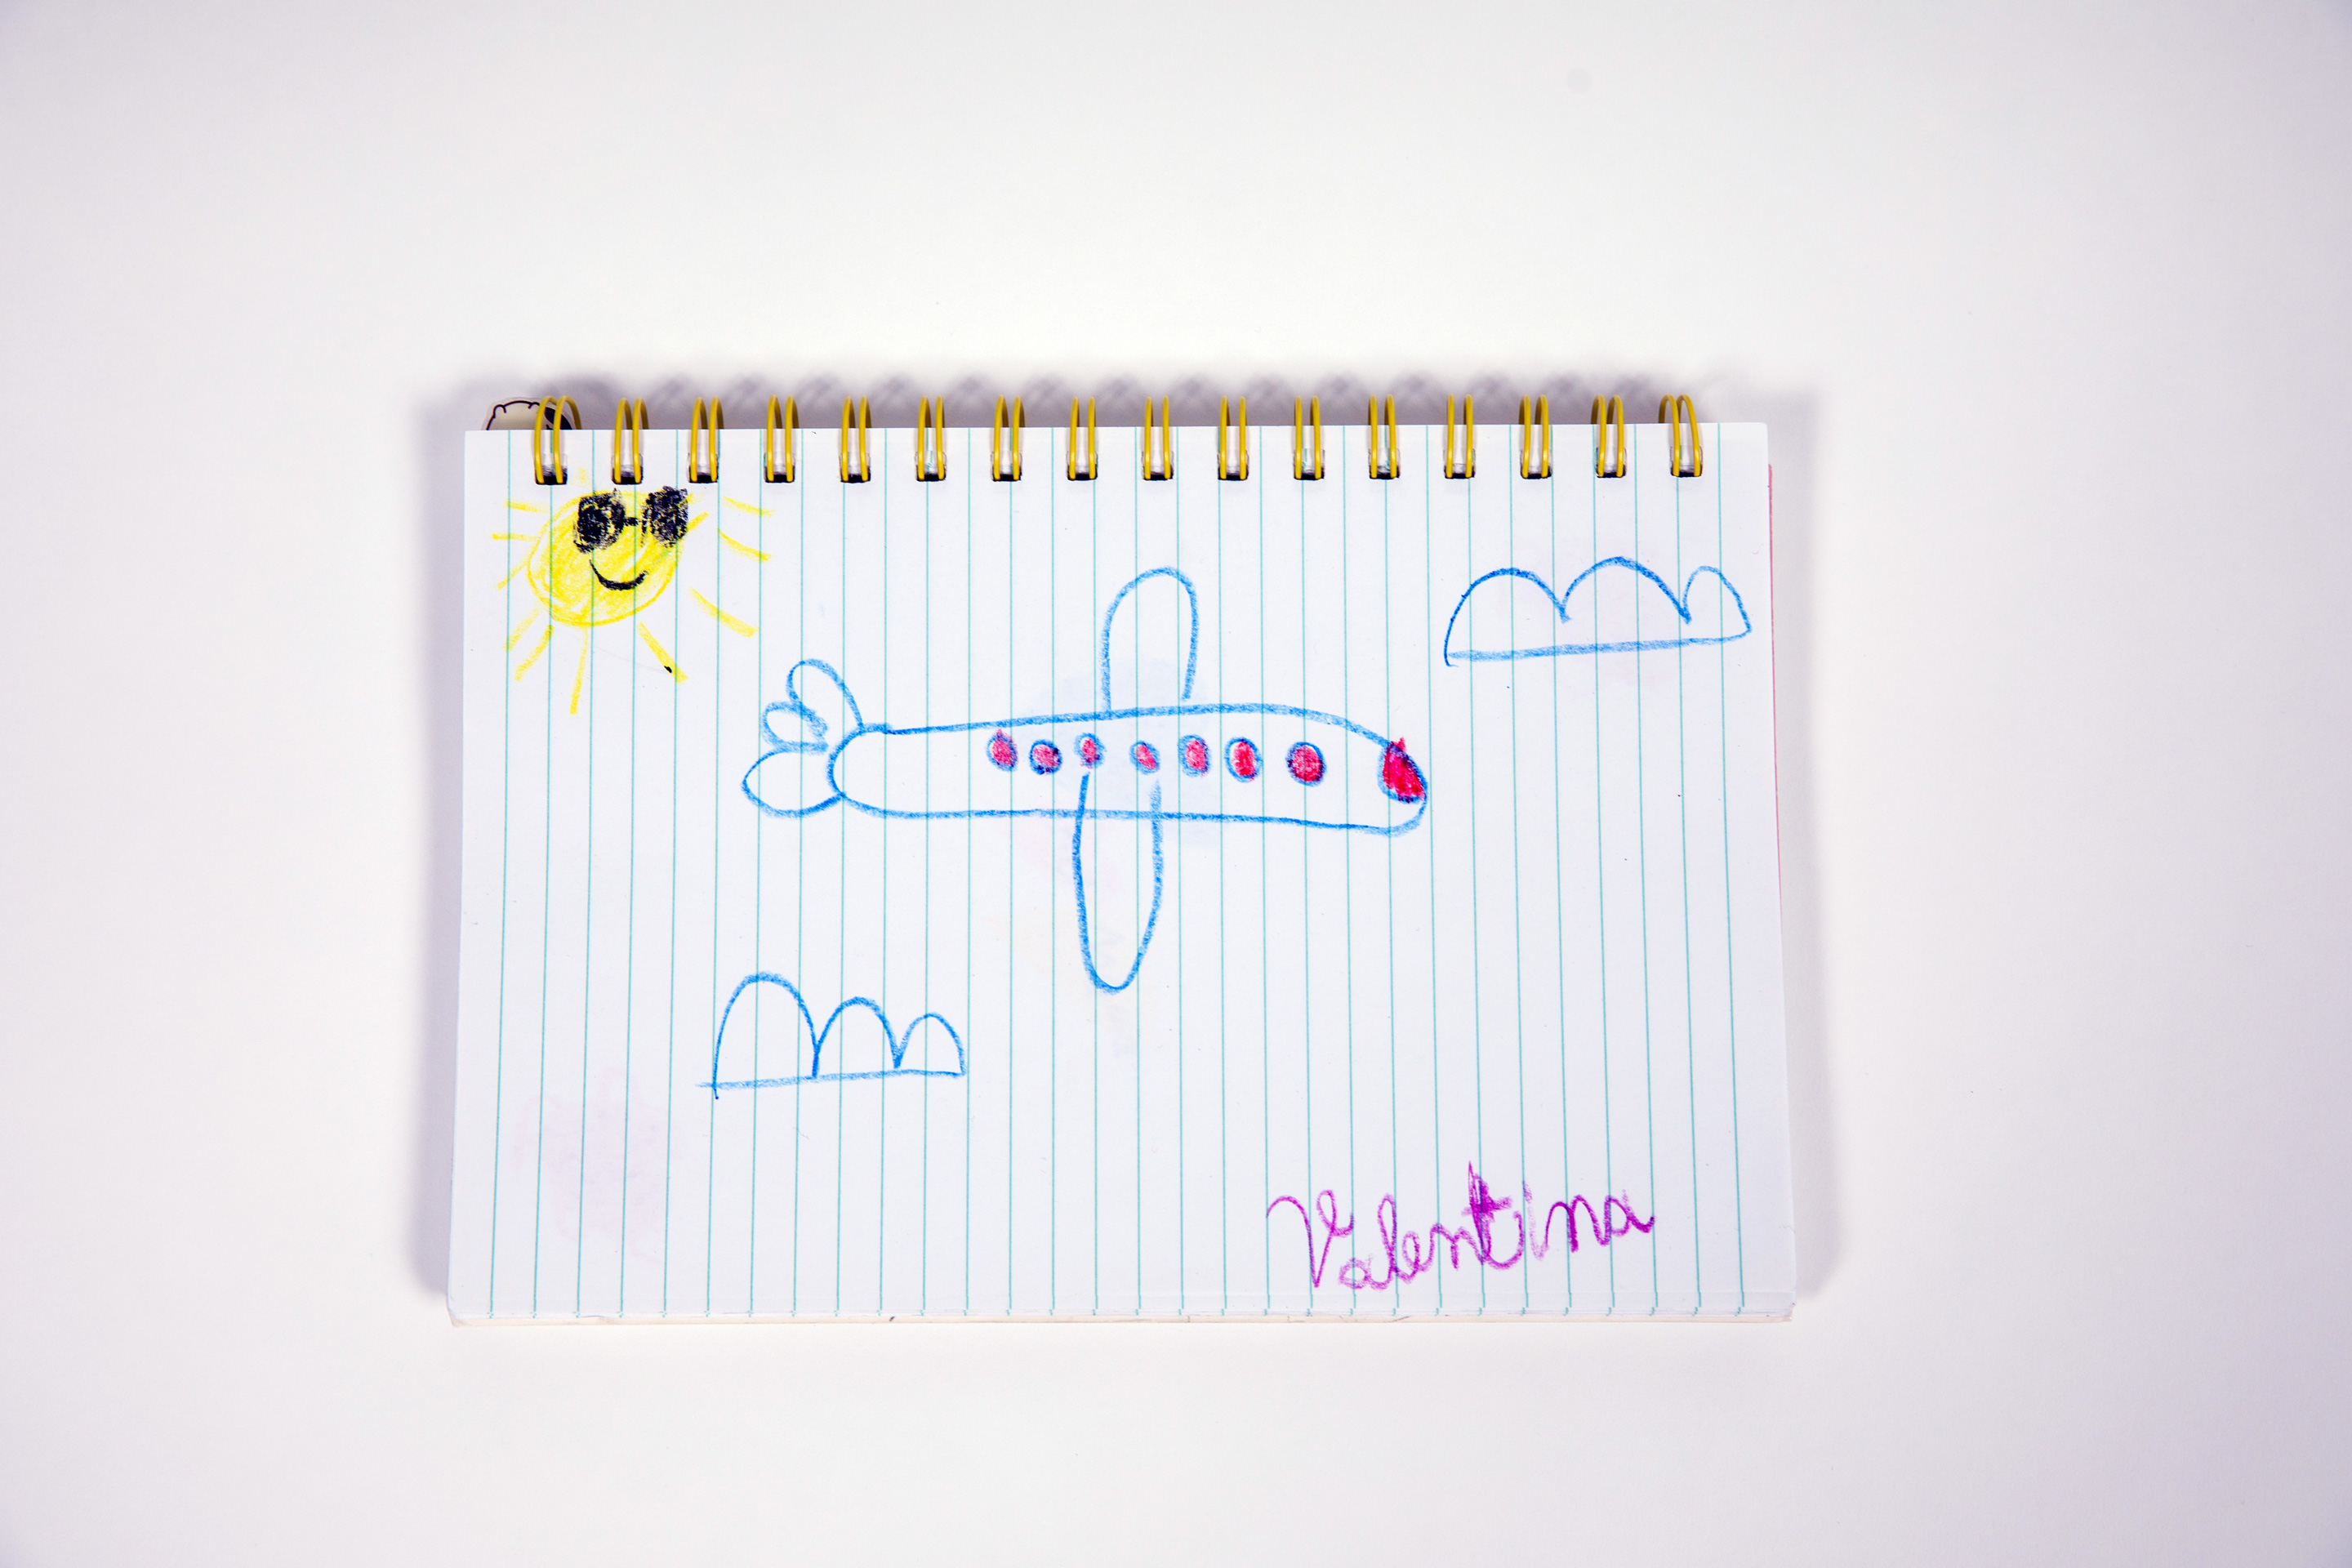 L'Avion de Valentina Casol, drawing, August 2021